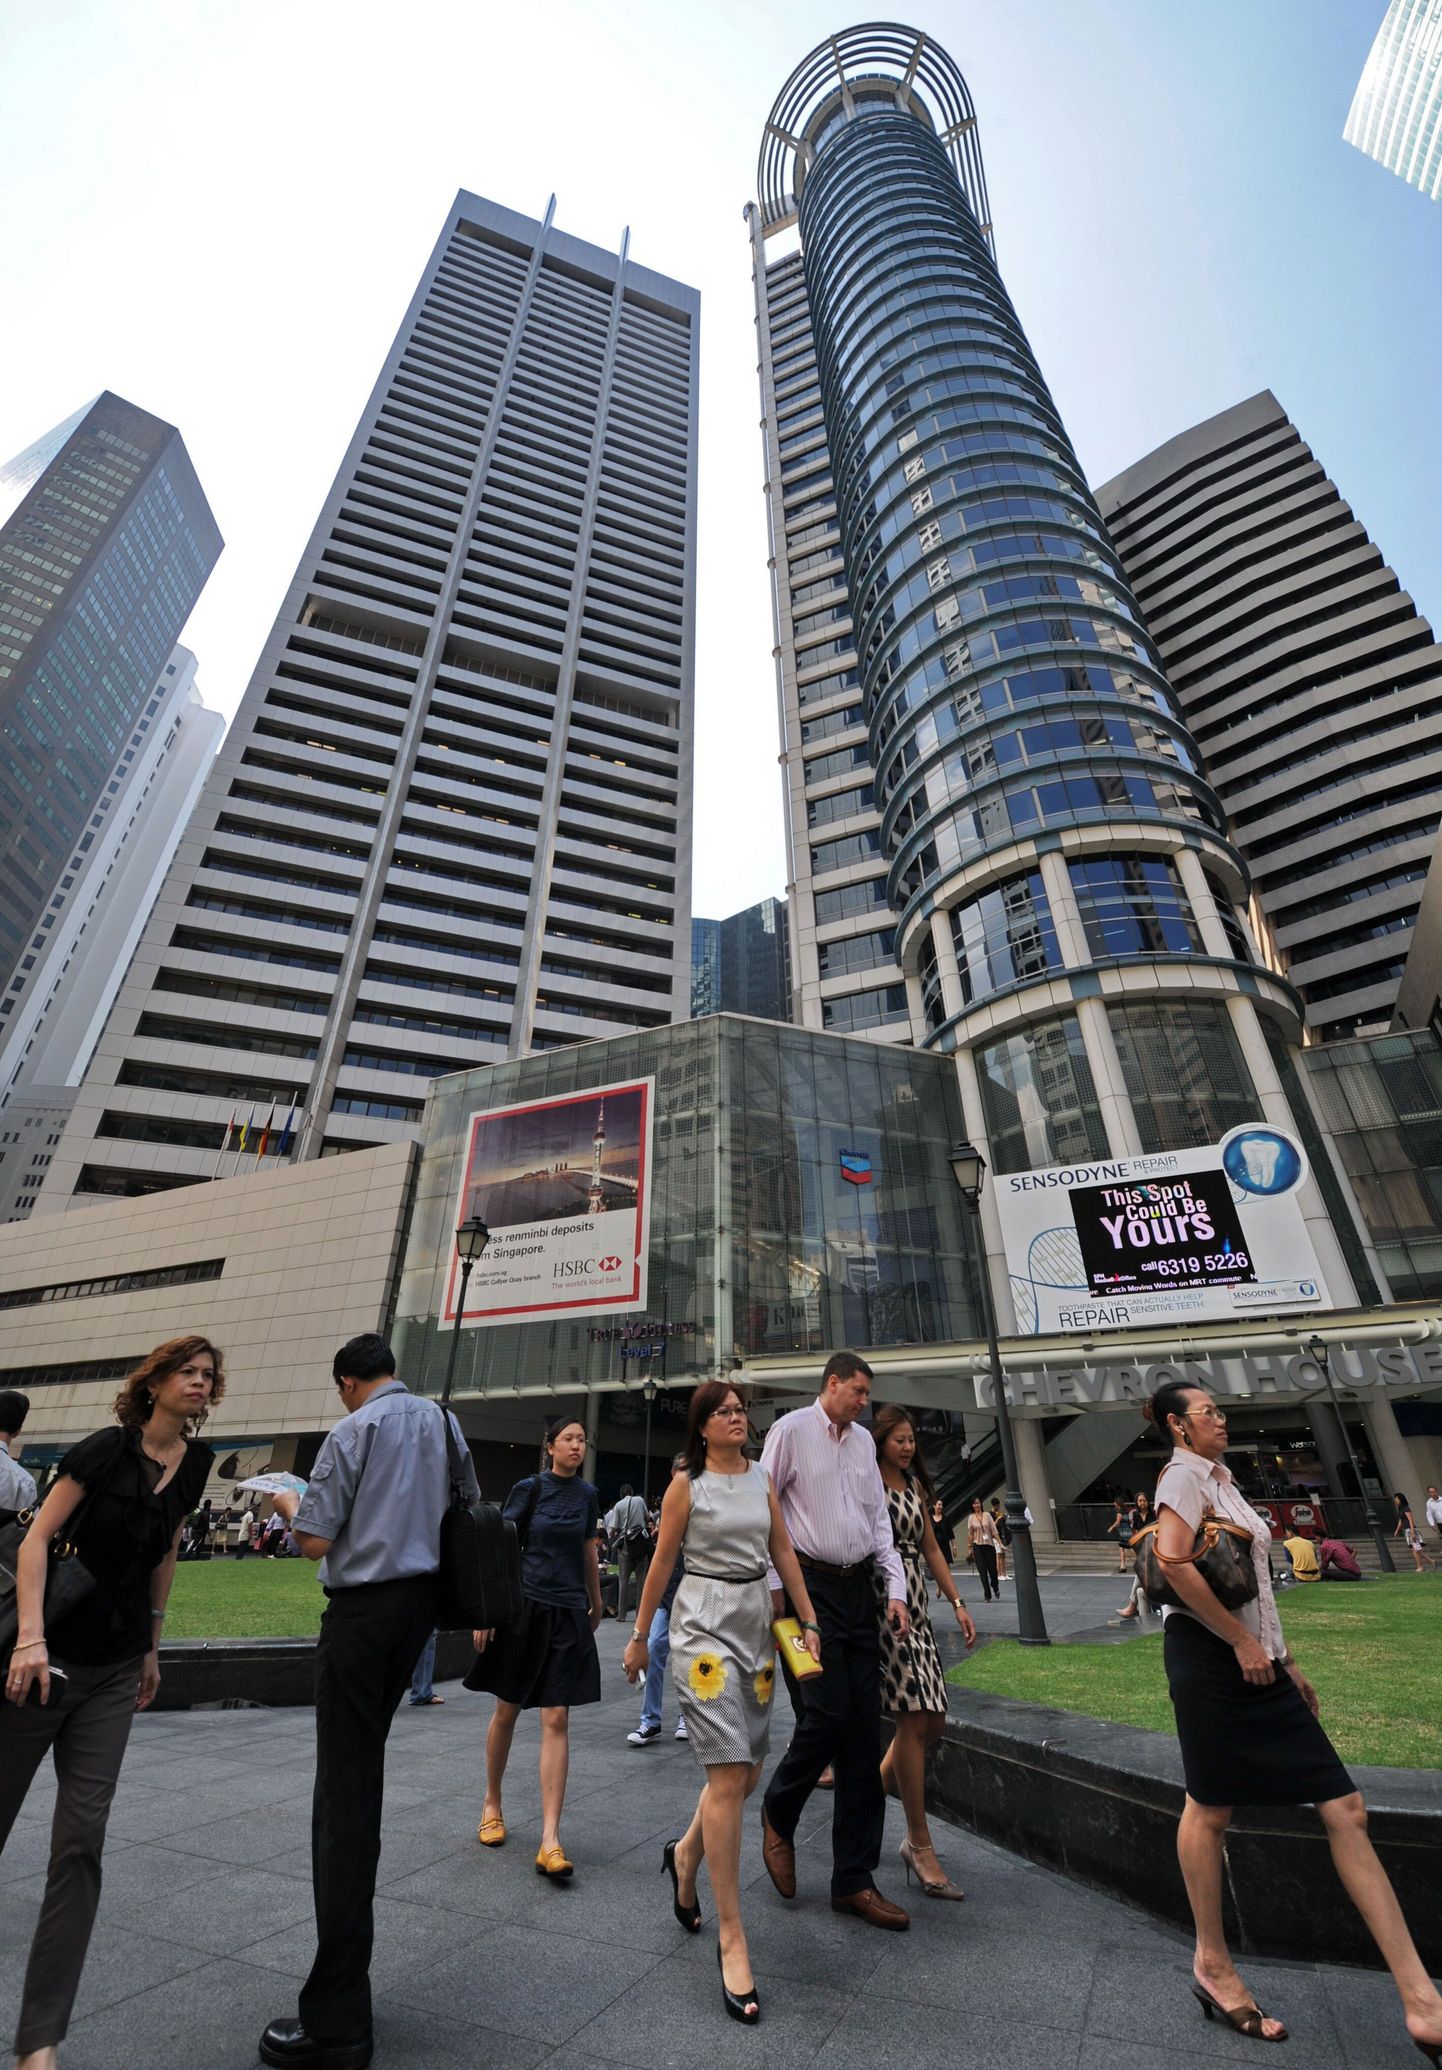 Enam kui miljoni dollarilise varandusega perede kontsentratsioon on kõige kõrgem Singapuris.